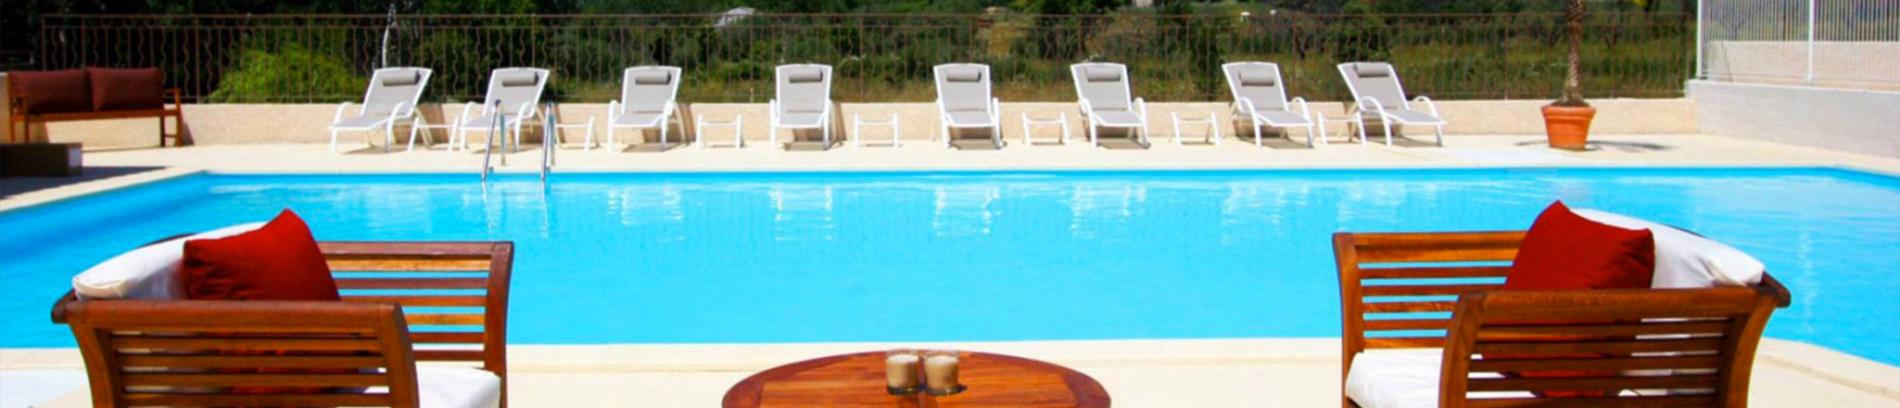 Slide résidence - domaine de bourgeac - paradou - piscine